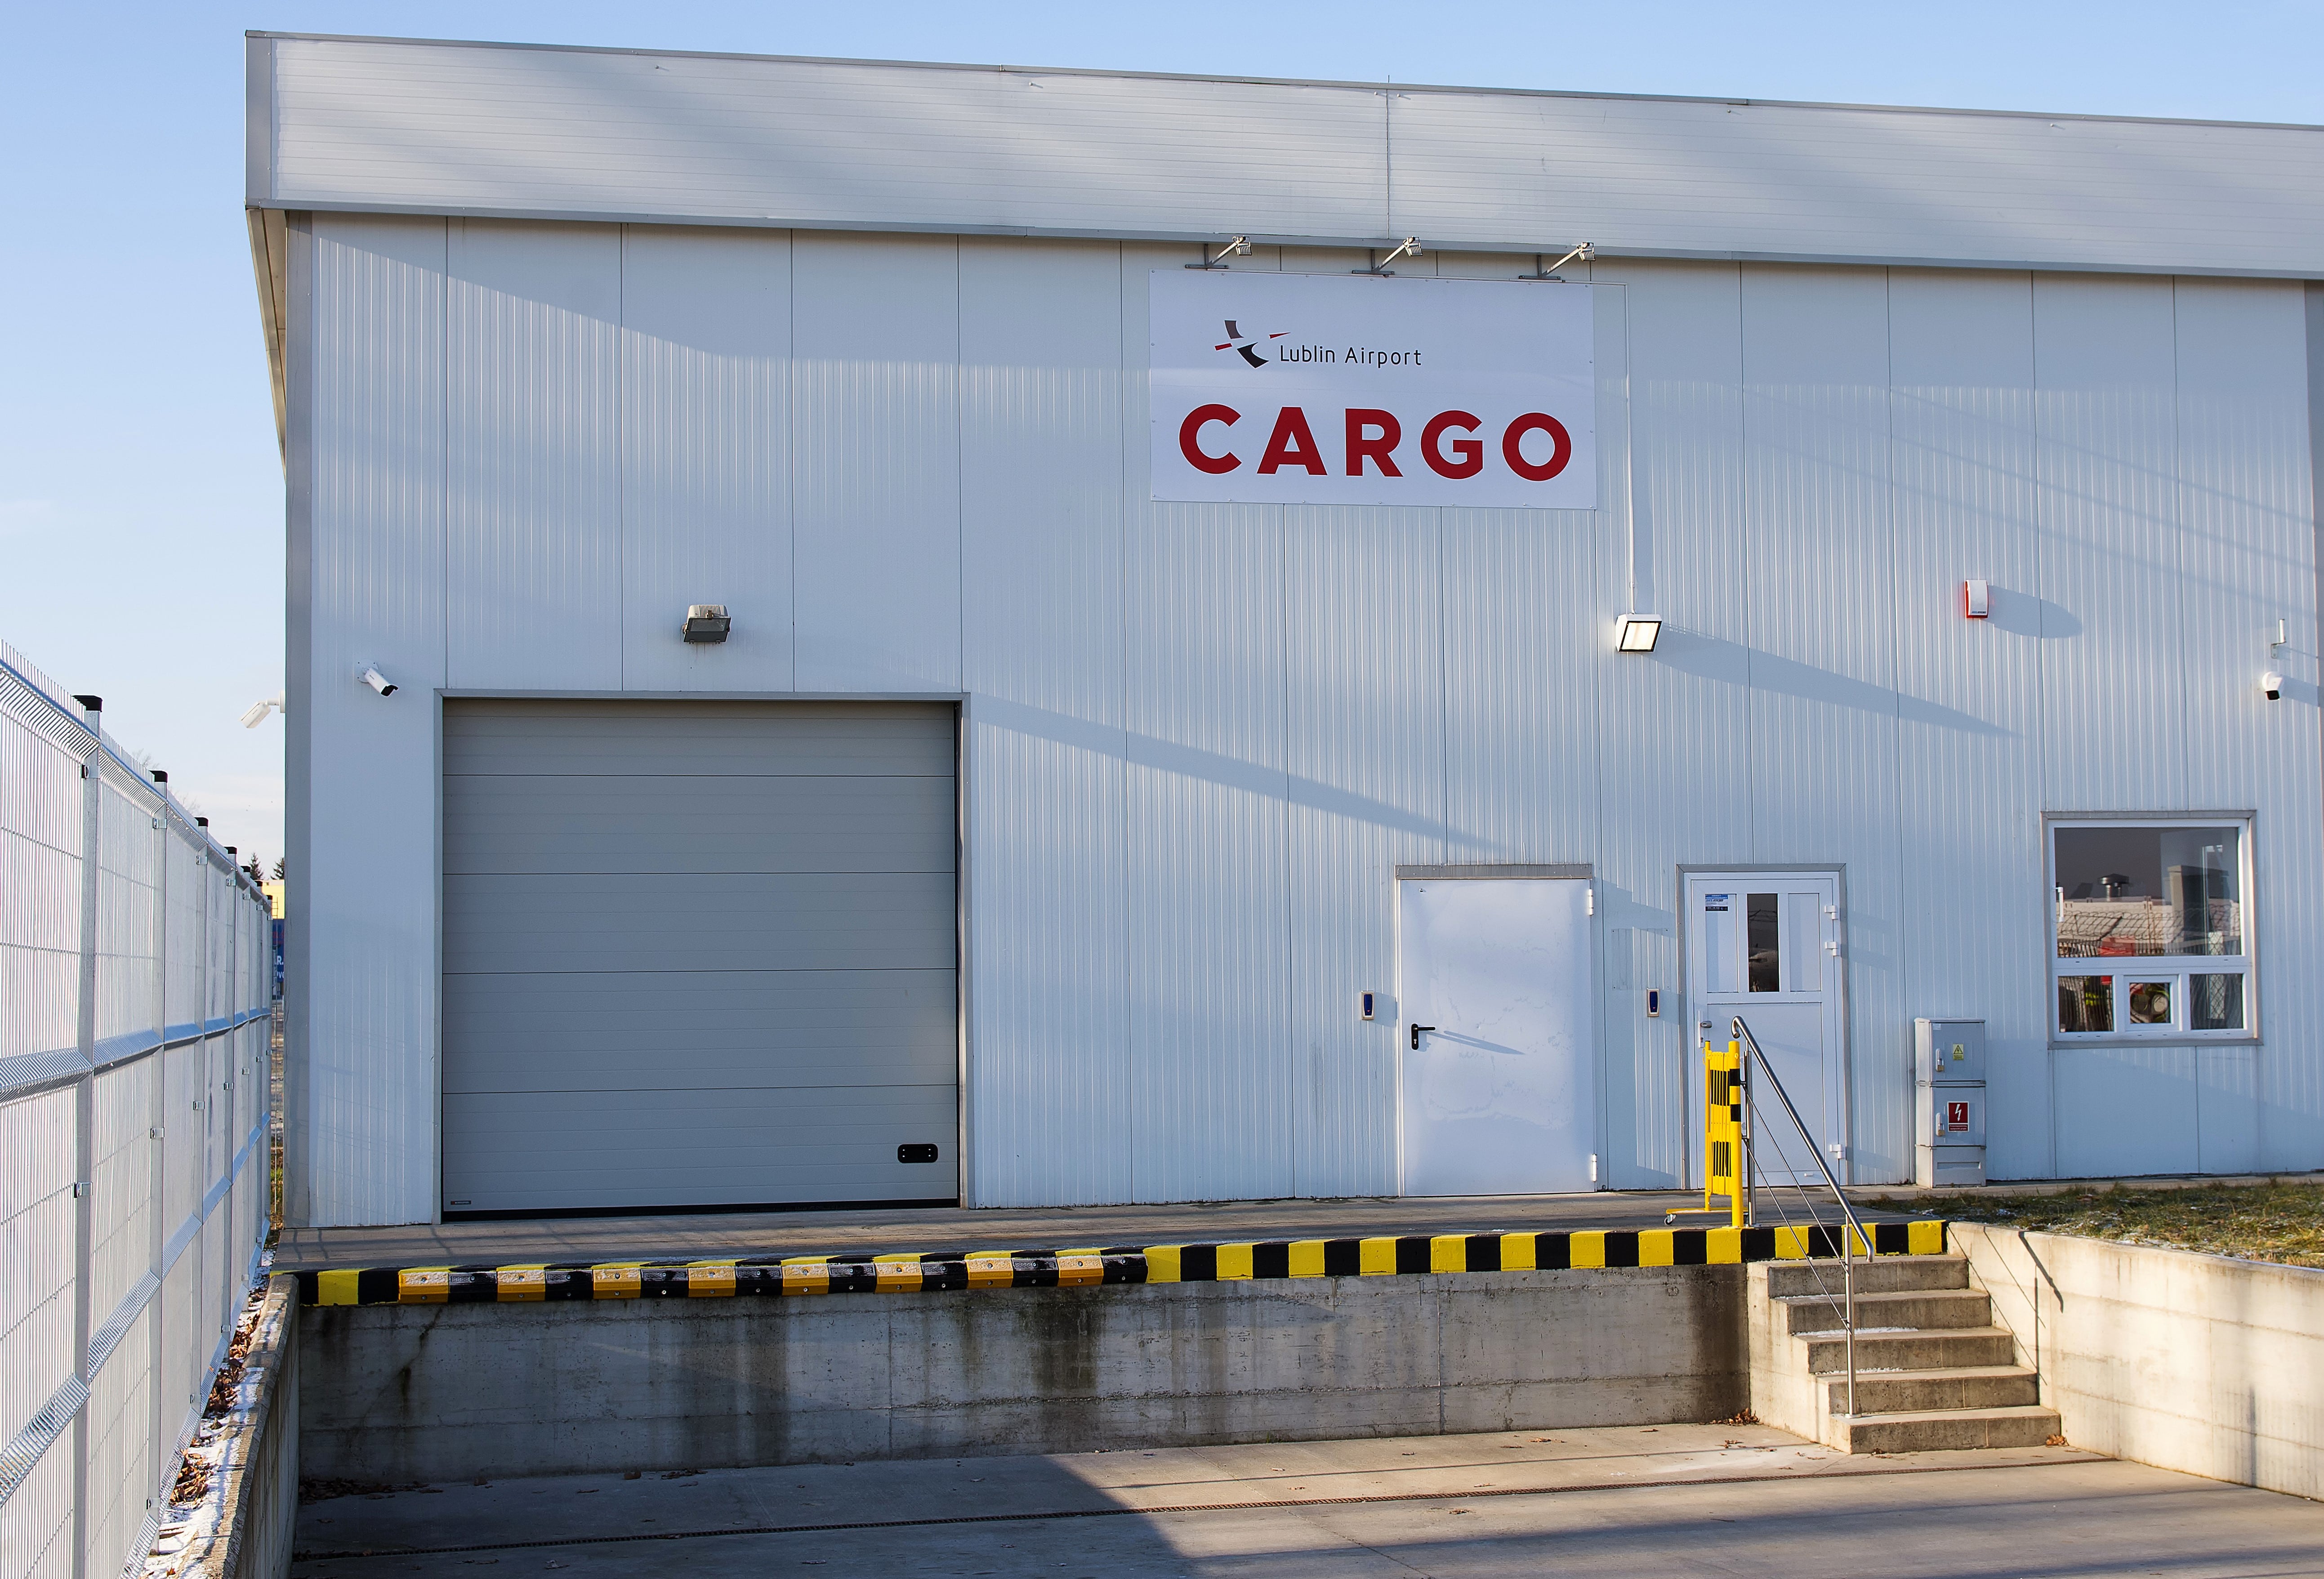 Port Lotniczy Lublin wprowadzi usługę cargo - Zdjęcie główne